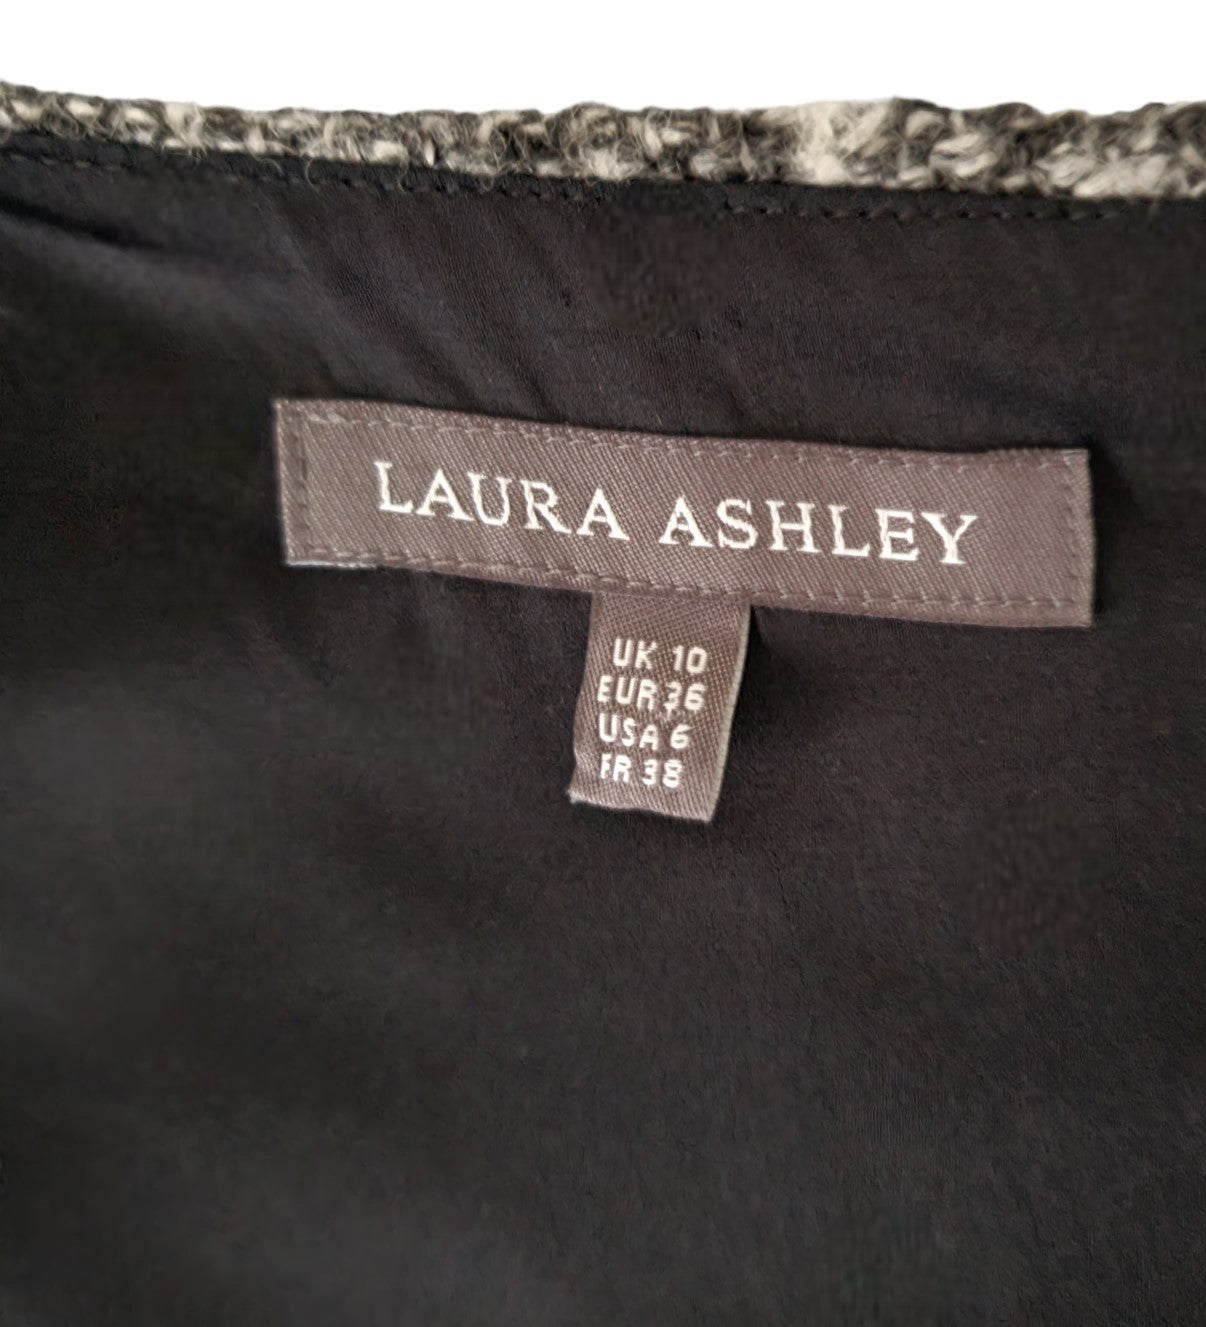 Laura Ashley Grey Wool Mix Pinafore Dress UK 10 US 6 EU 38 Timeless Fashions